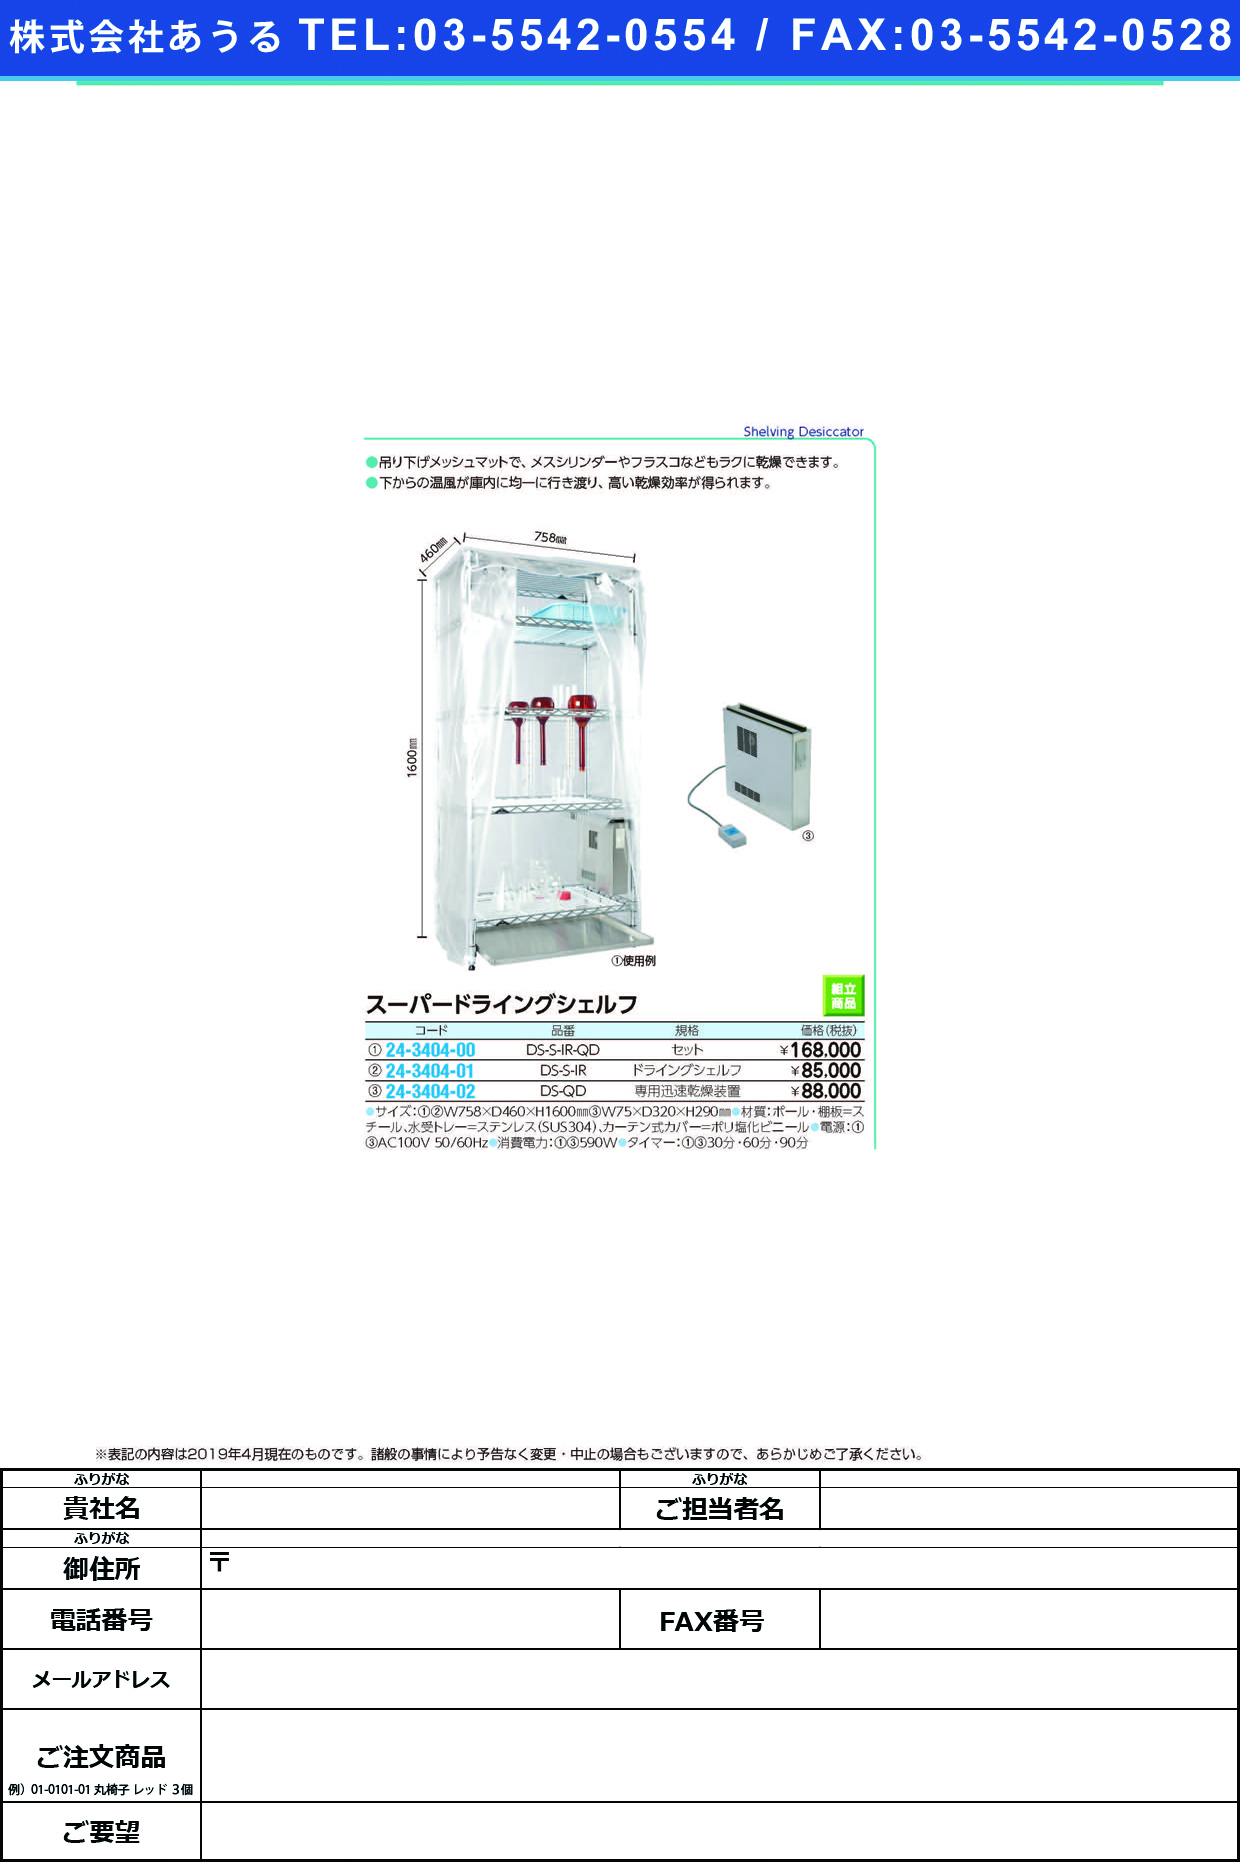 (24-3404-02)ドライングシェルフ用迅速乾燥装置 DS-QD ｽｰﾊﾟｰﾄﾞﾗｲﾝｸﾞｼｪﾙﾌ【1台単位】【2019年カタログ商品】